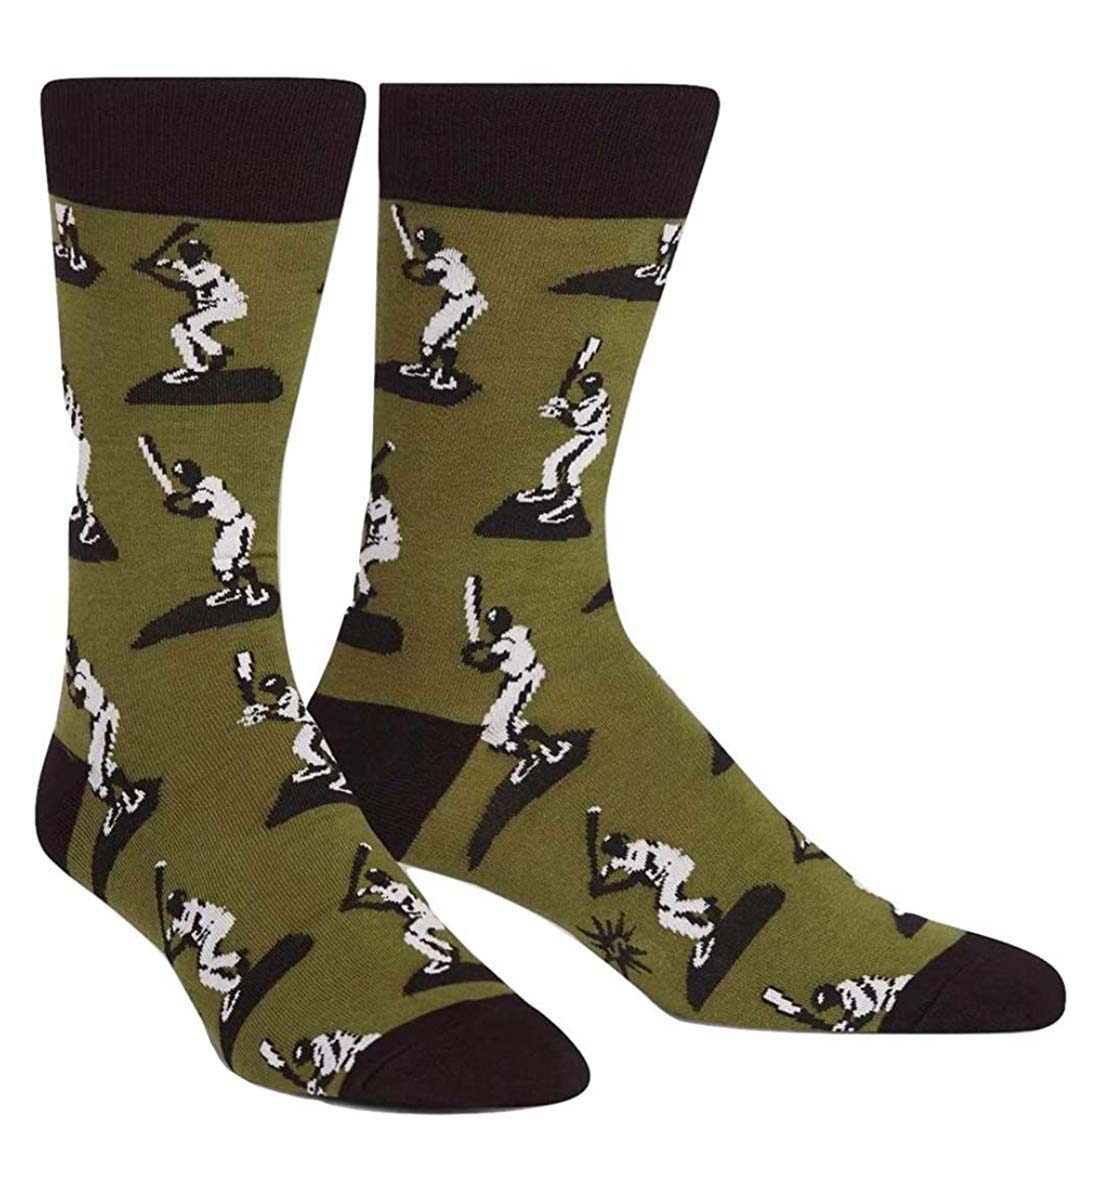 SOCK it to me Men's Crew Socks (mef0297),Batter Up (Green) - Batter Up,One Size